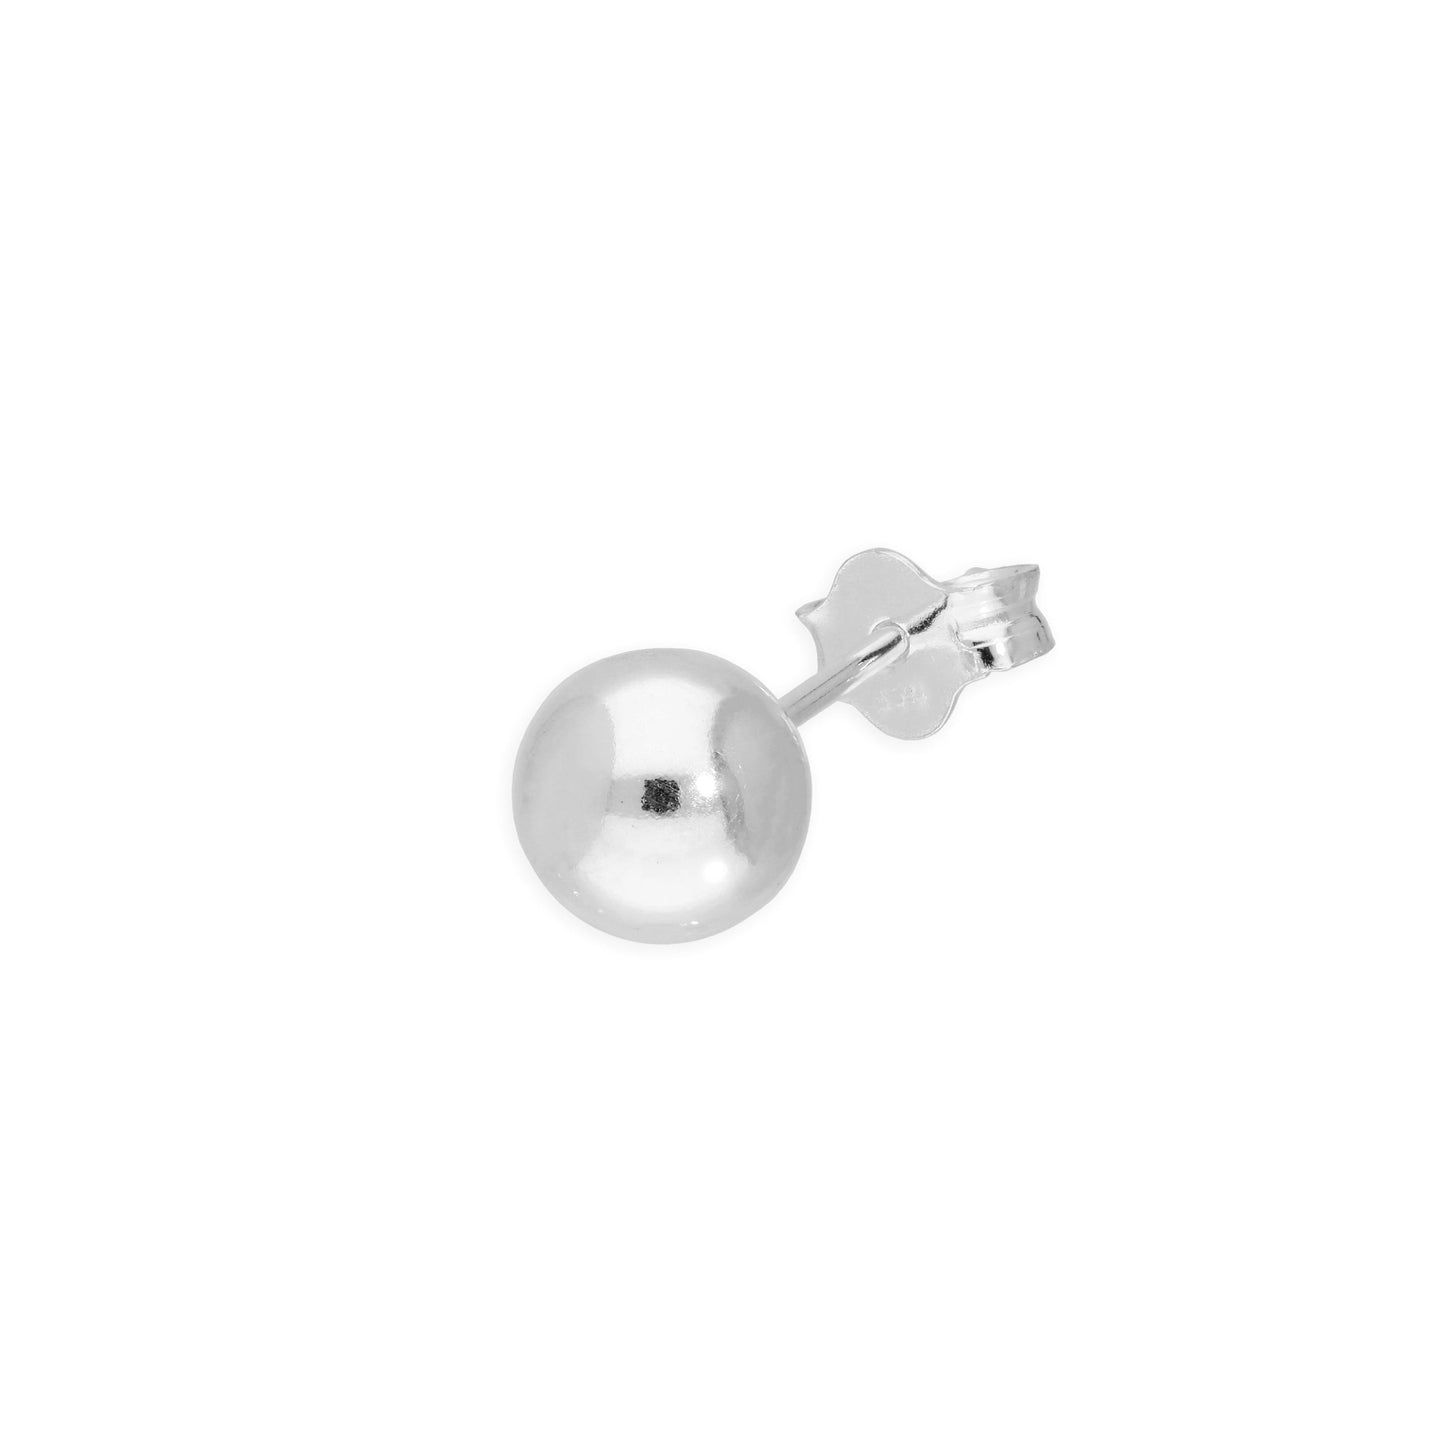 Single Sterling Silver 6mm Ball Stud Earring